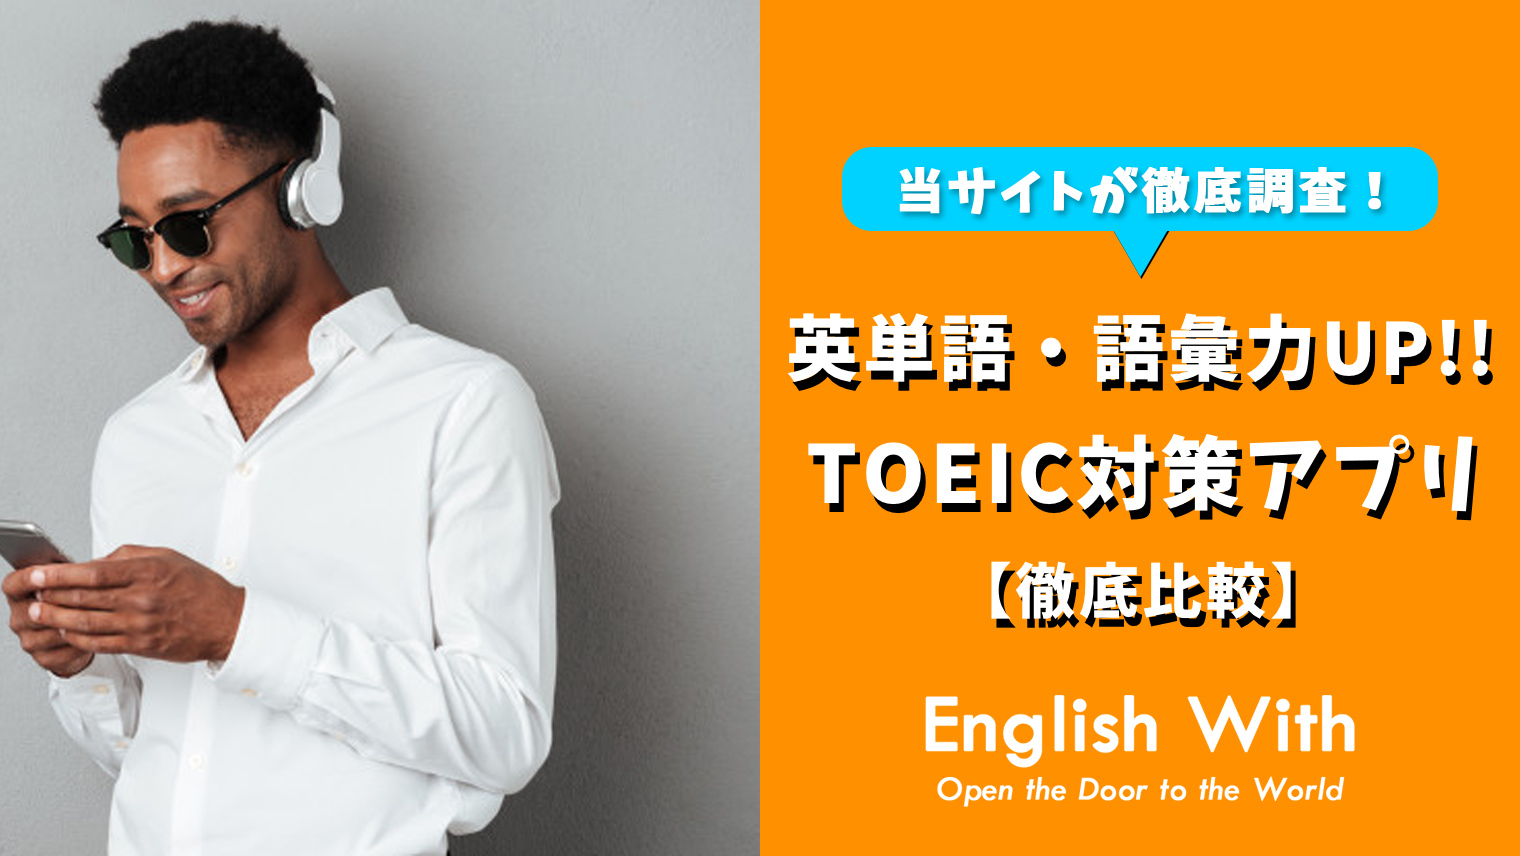 Toeic英単語がたくさん学べる おすすめ英語学習アプリ 10選 おすすめ英会話 英語学習の比較 ランキング English With